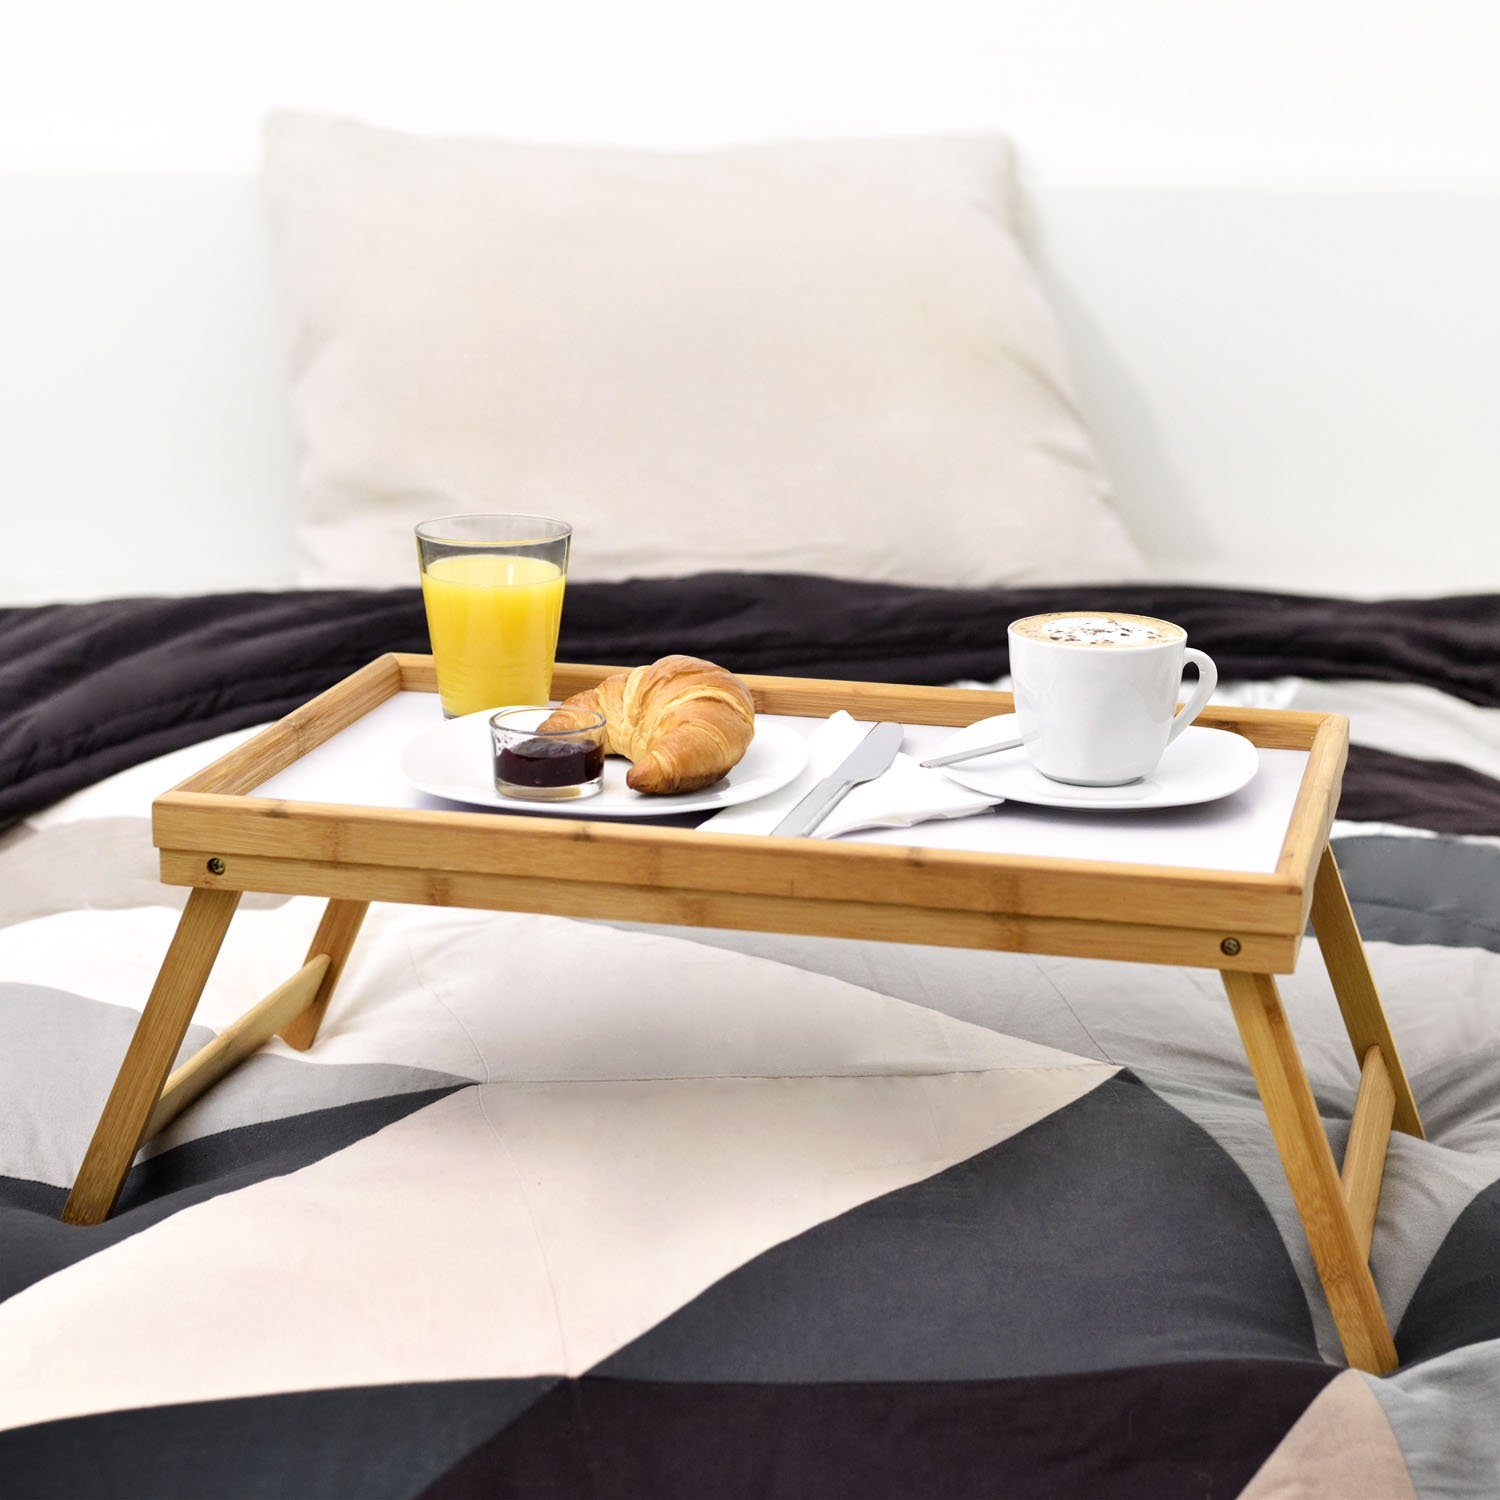 Betttisch Bambus Holz Frühstückstablett Tabletttisch Bett-Tablett, Dimono Serviertablett